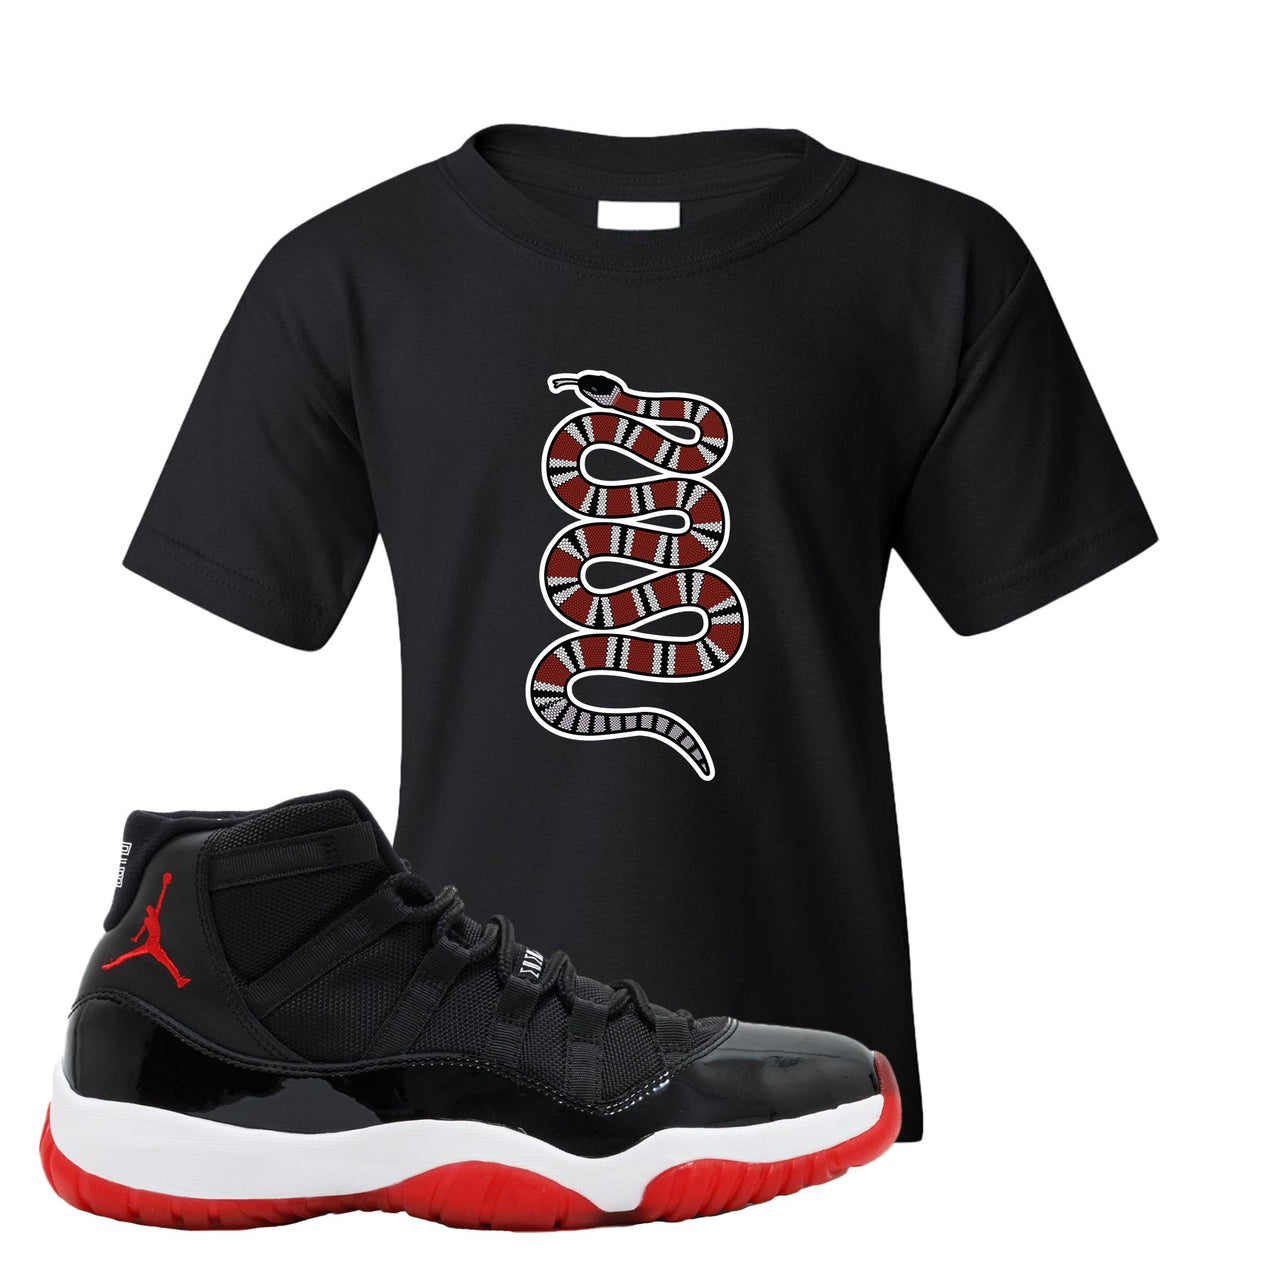 Jordan 11 Bred Coiled Snake Black Sneaker Hook Up Kid's T-Shirt